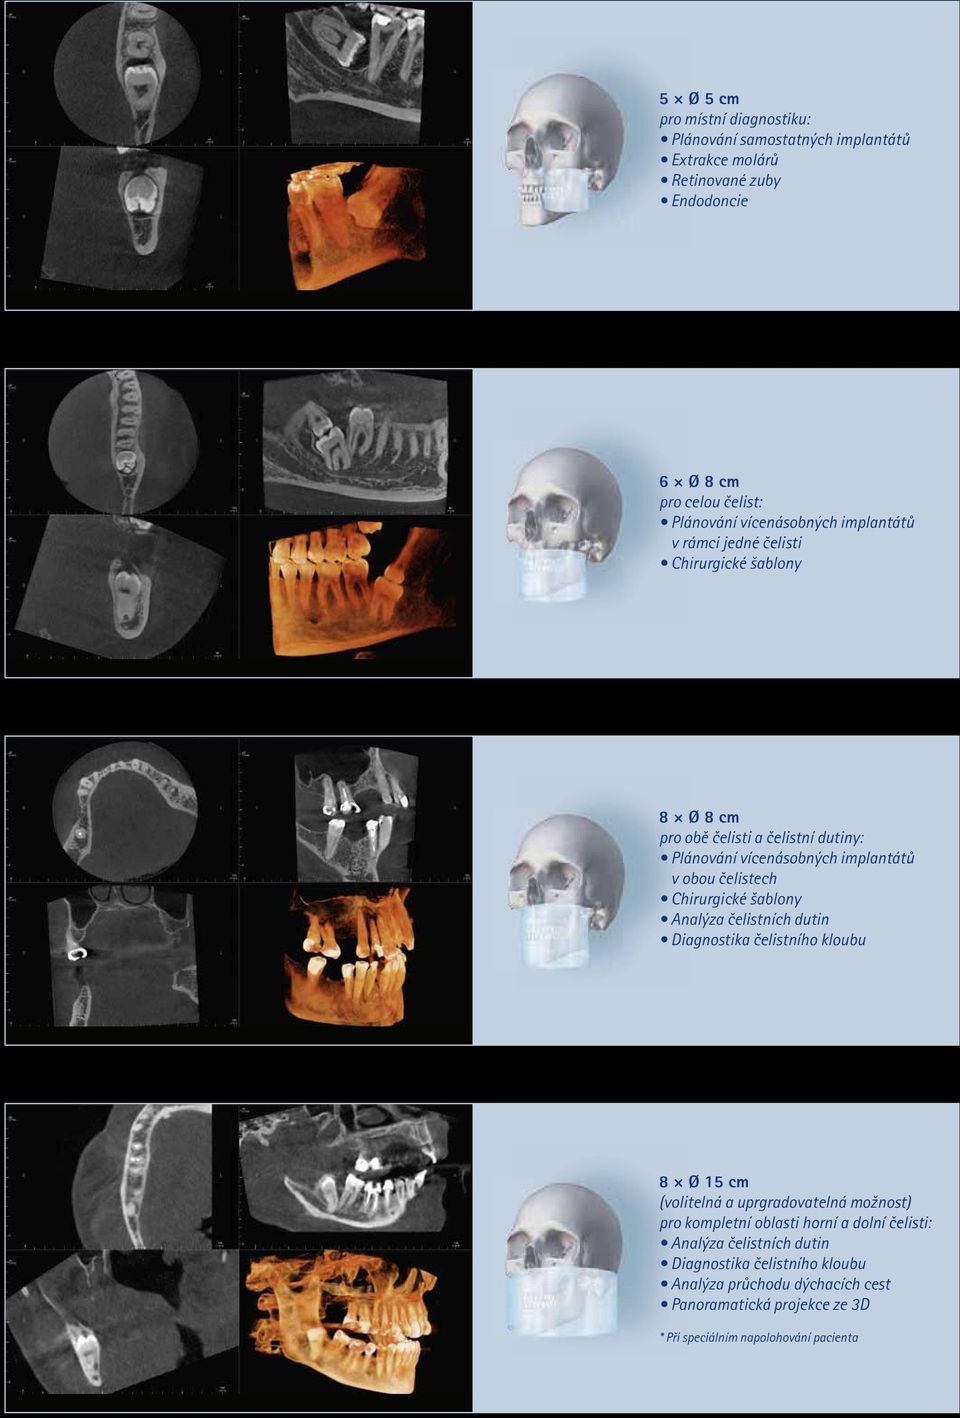 čelistech Chirurgické šablony Analýza čelistních dutin Diagnostika čelistního kloubu 8 Ø 15 cm (volitelná a uprgradovatelná možnost) pro kompletní oblasti